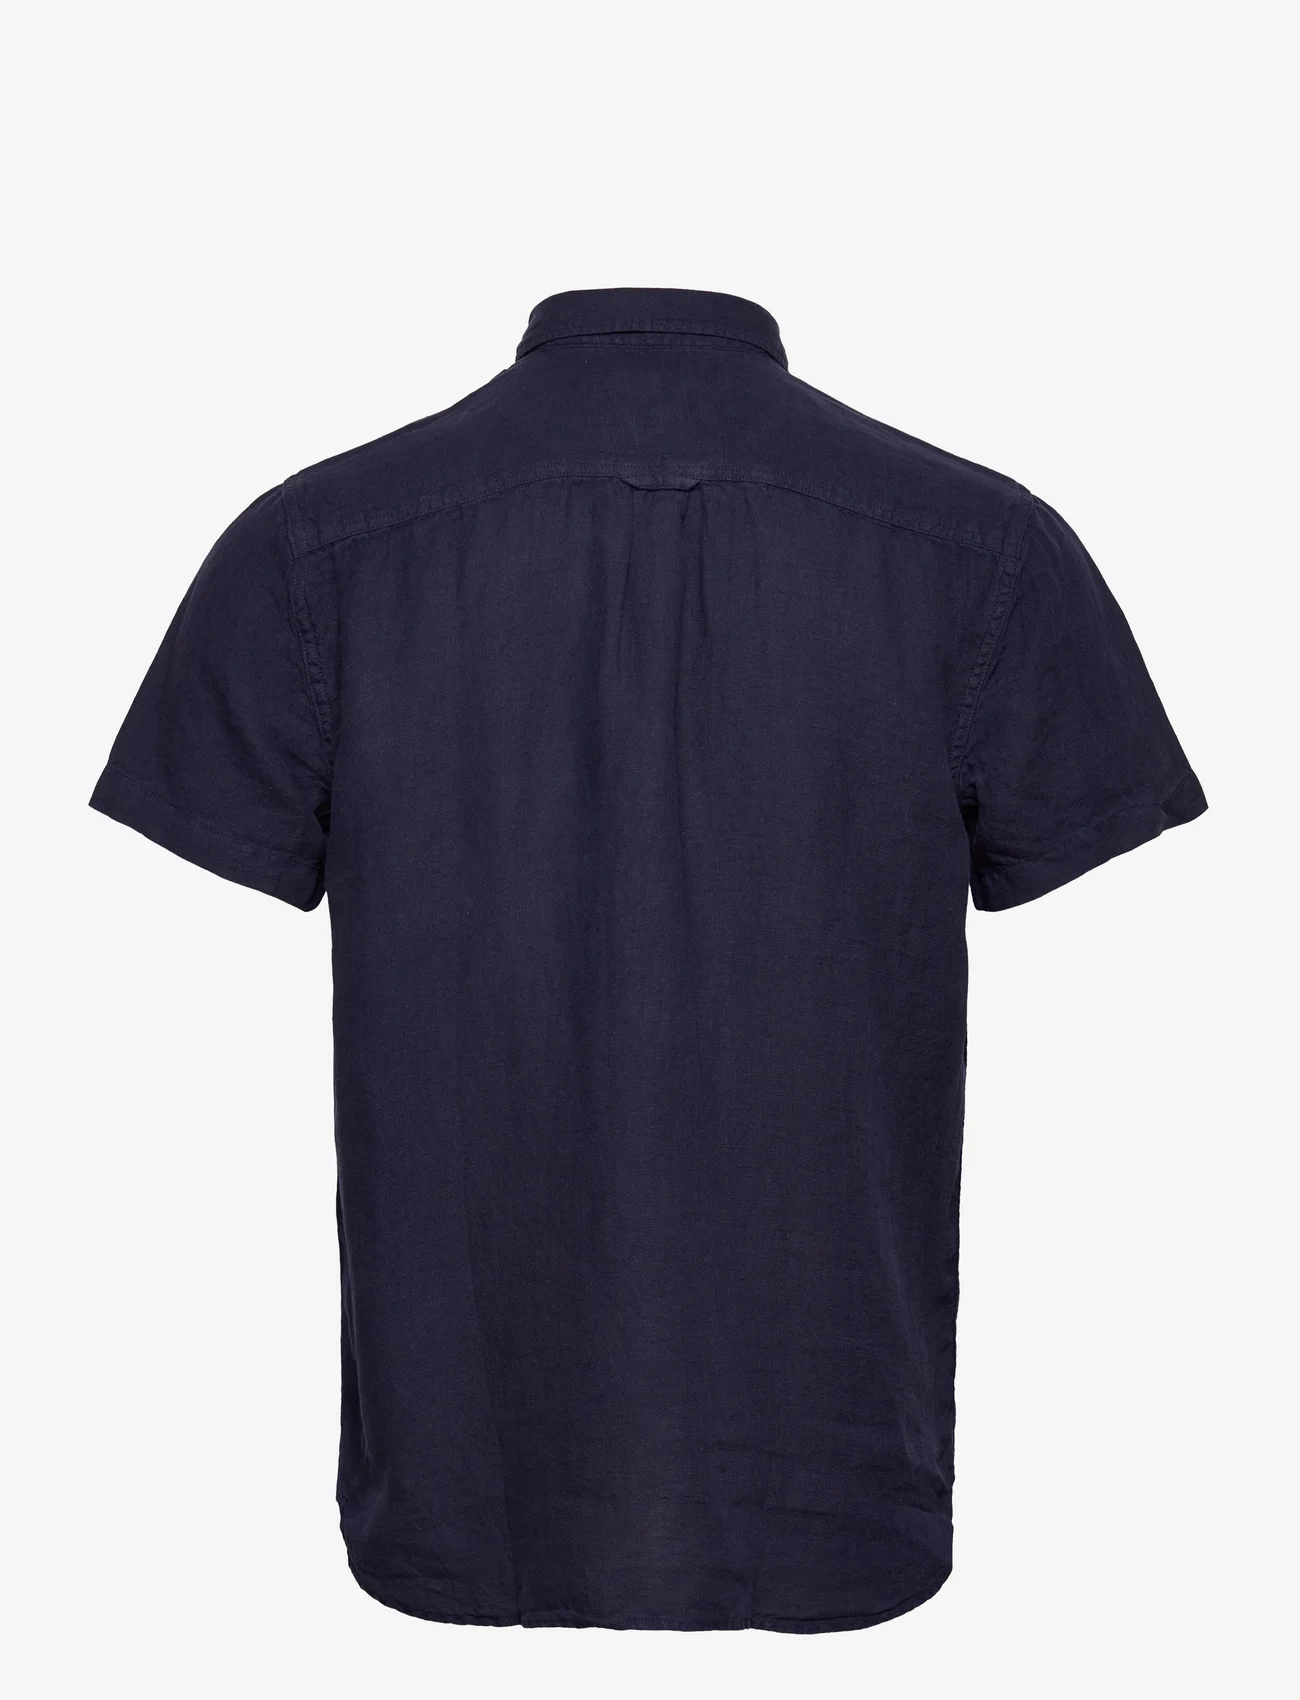 Sebago - Linen Shirt Short Sleeve - linen shirts - navy - 1